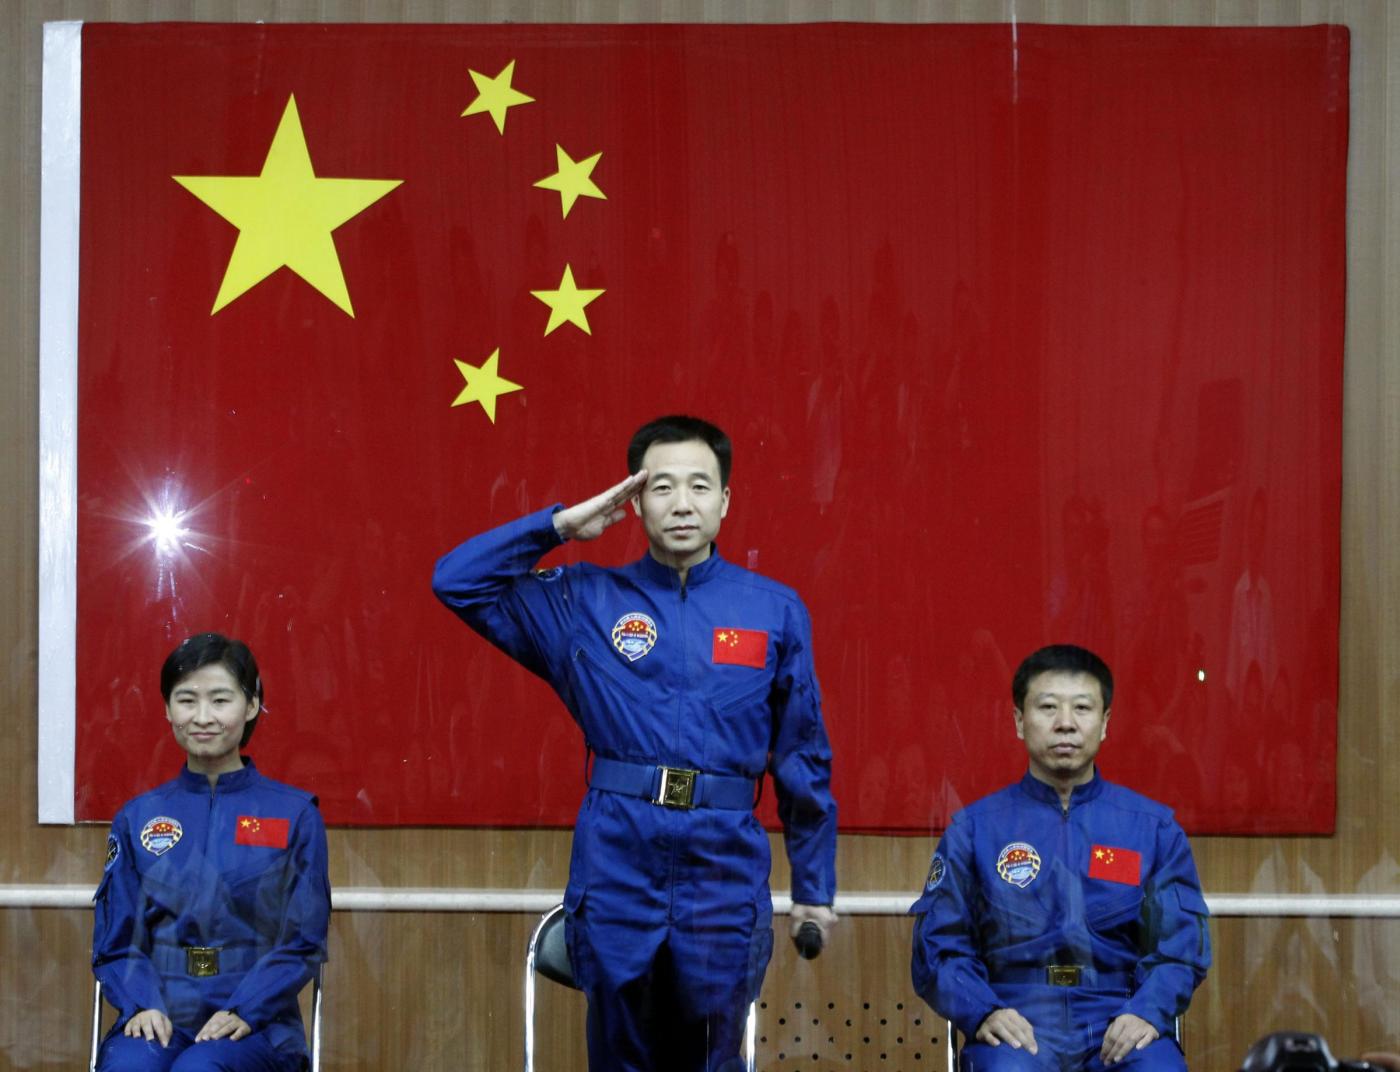 Cina, conferenza missione nello spazio010